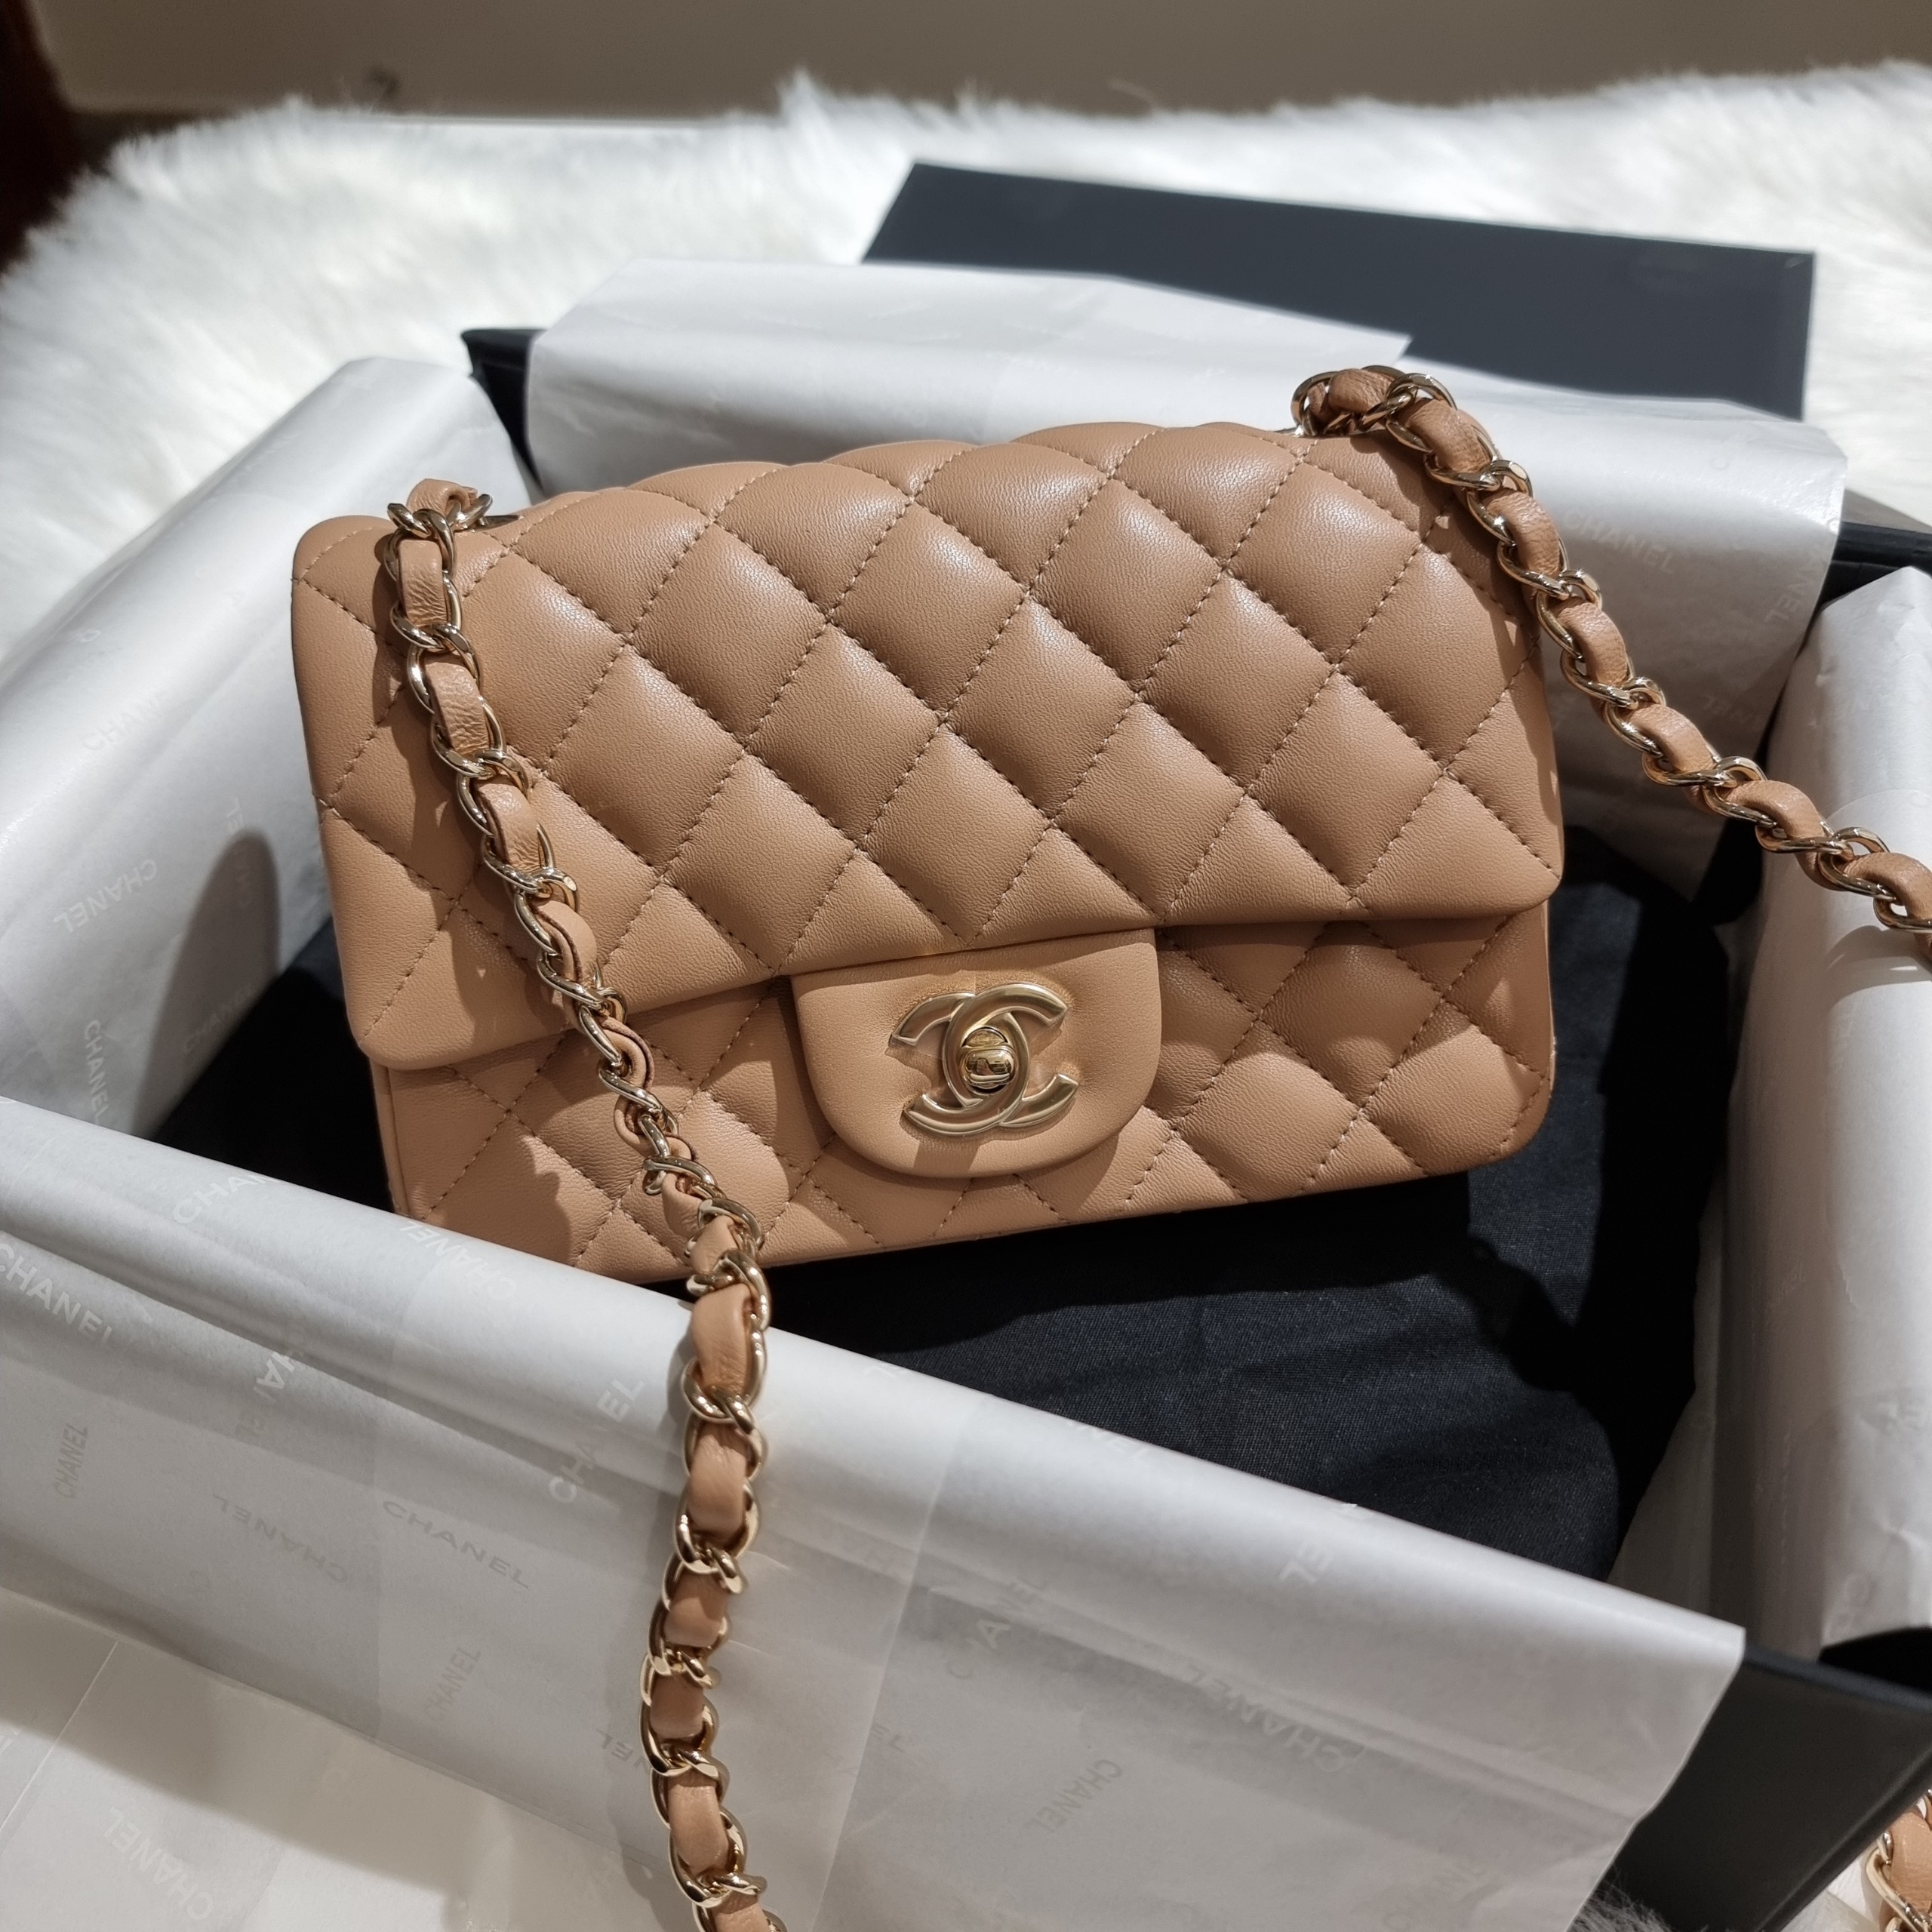 Đánh giá Túi Chanel Mini 8 Flap Bag  bảo bối của các quý cô hiện đại   Centimetvn